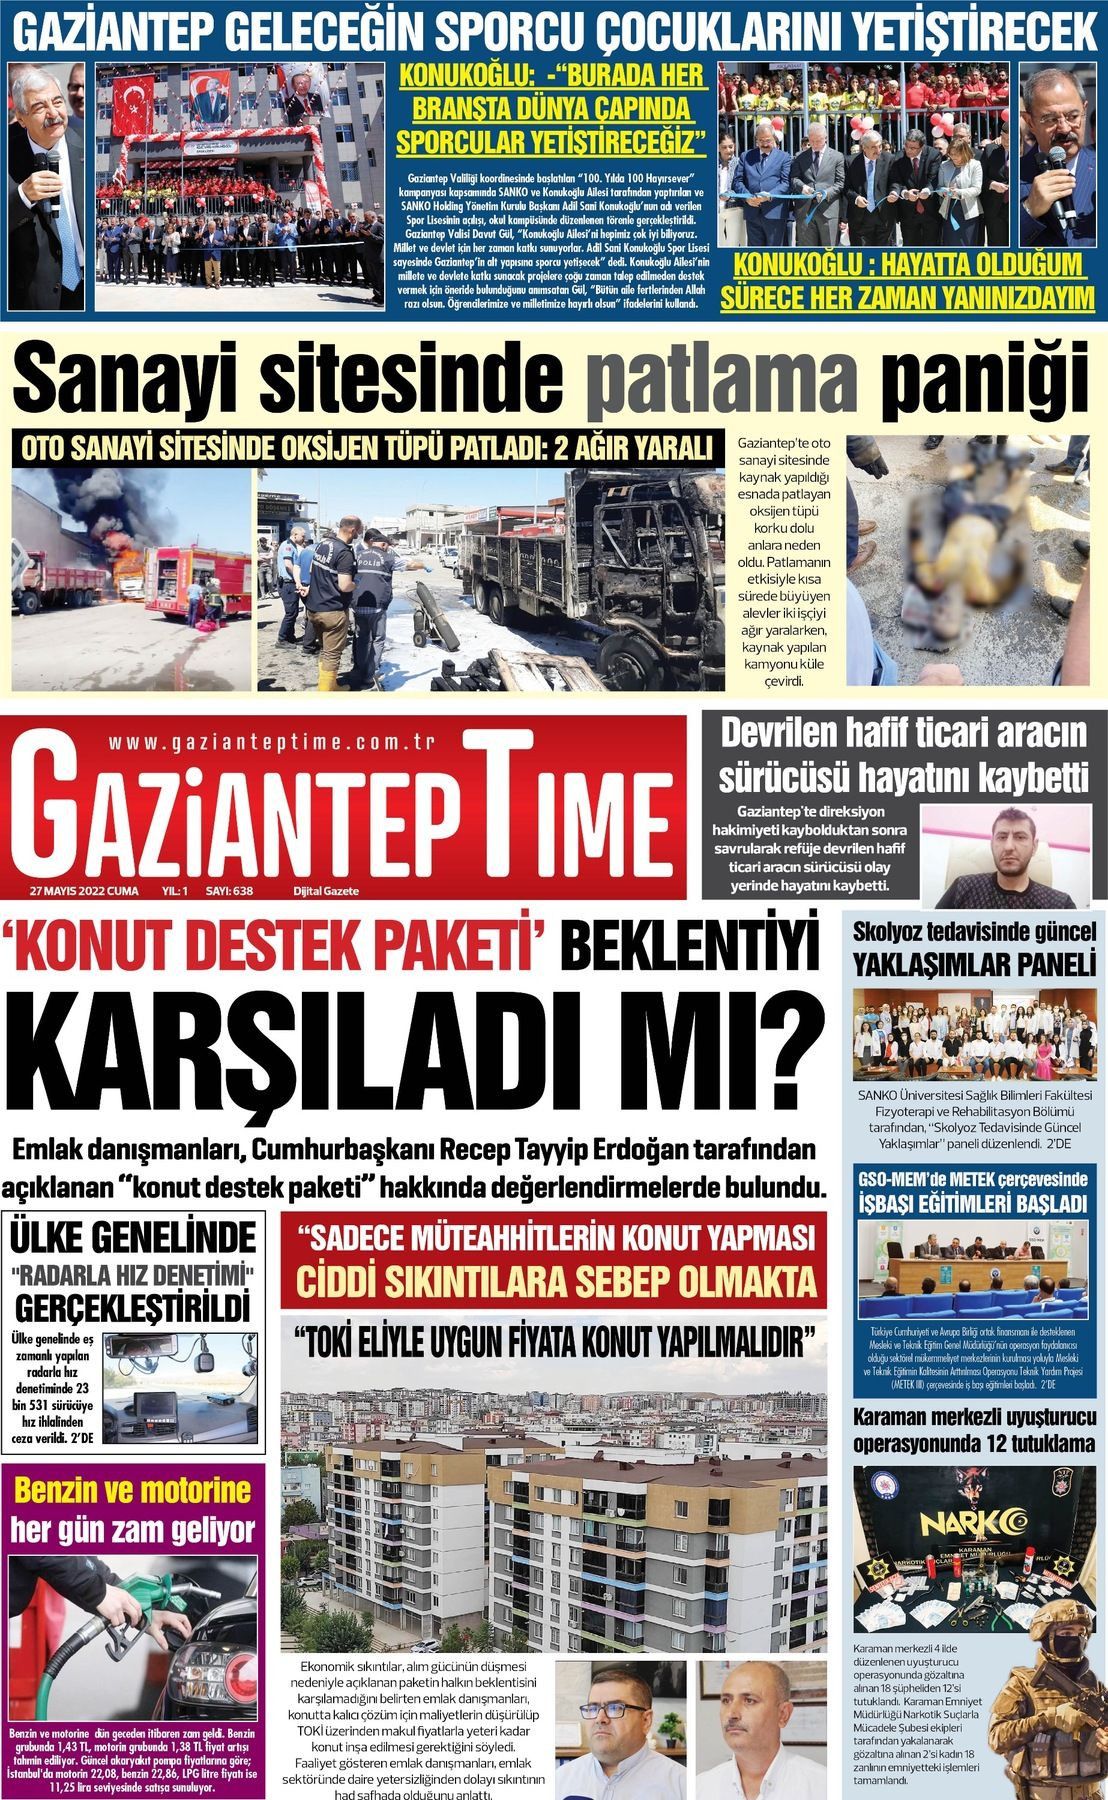 May S Tarihli Gaziantep Time Gazete Man Etleri